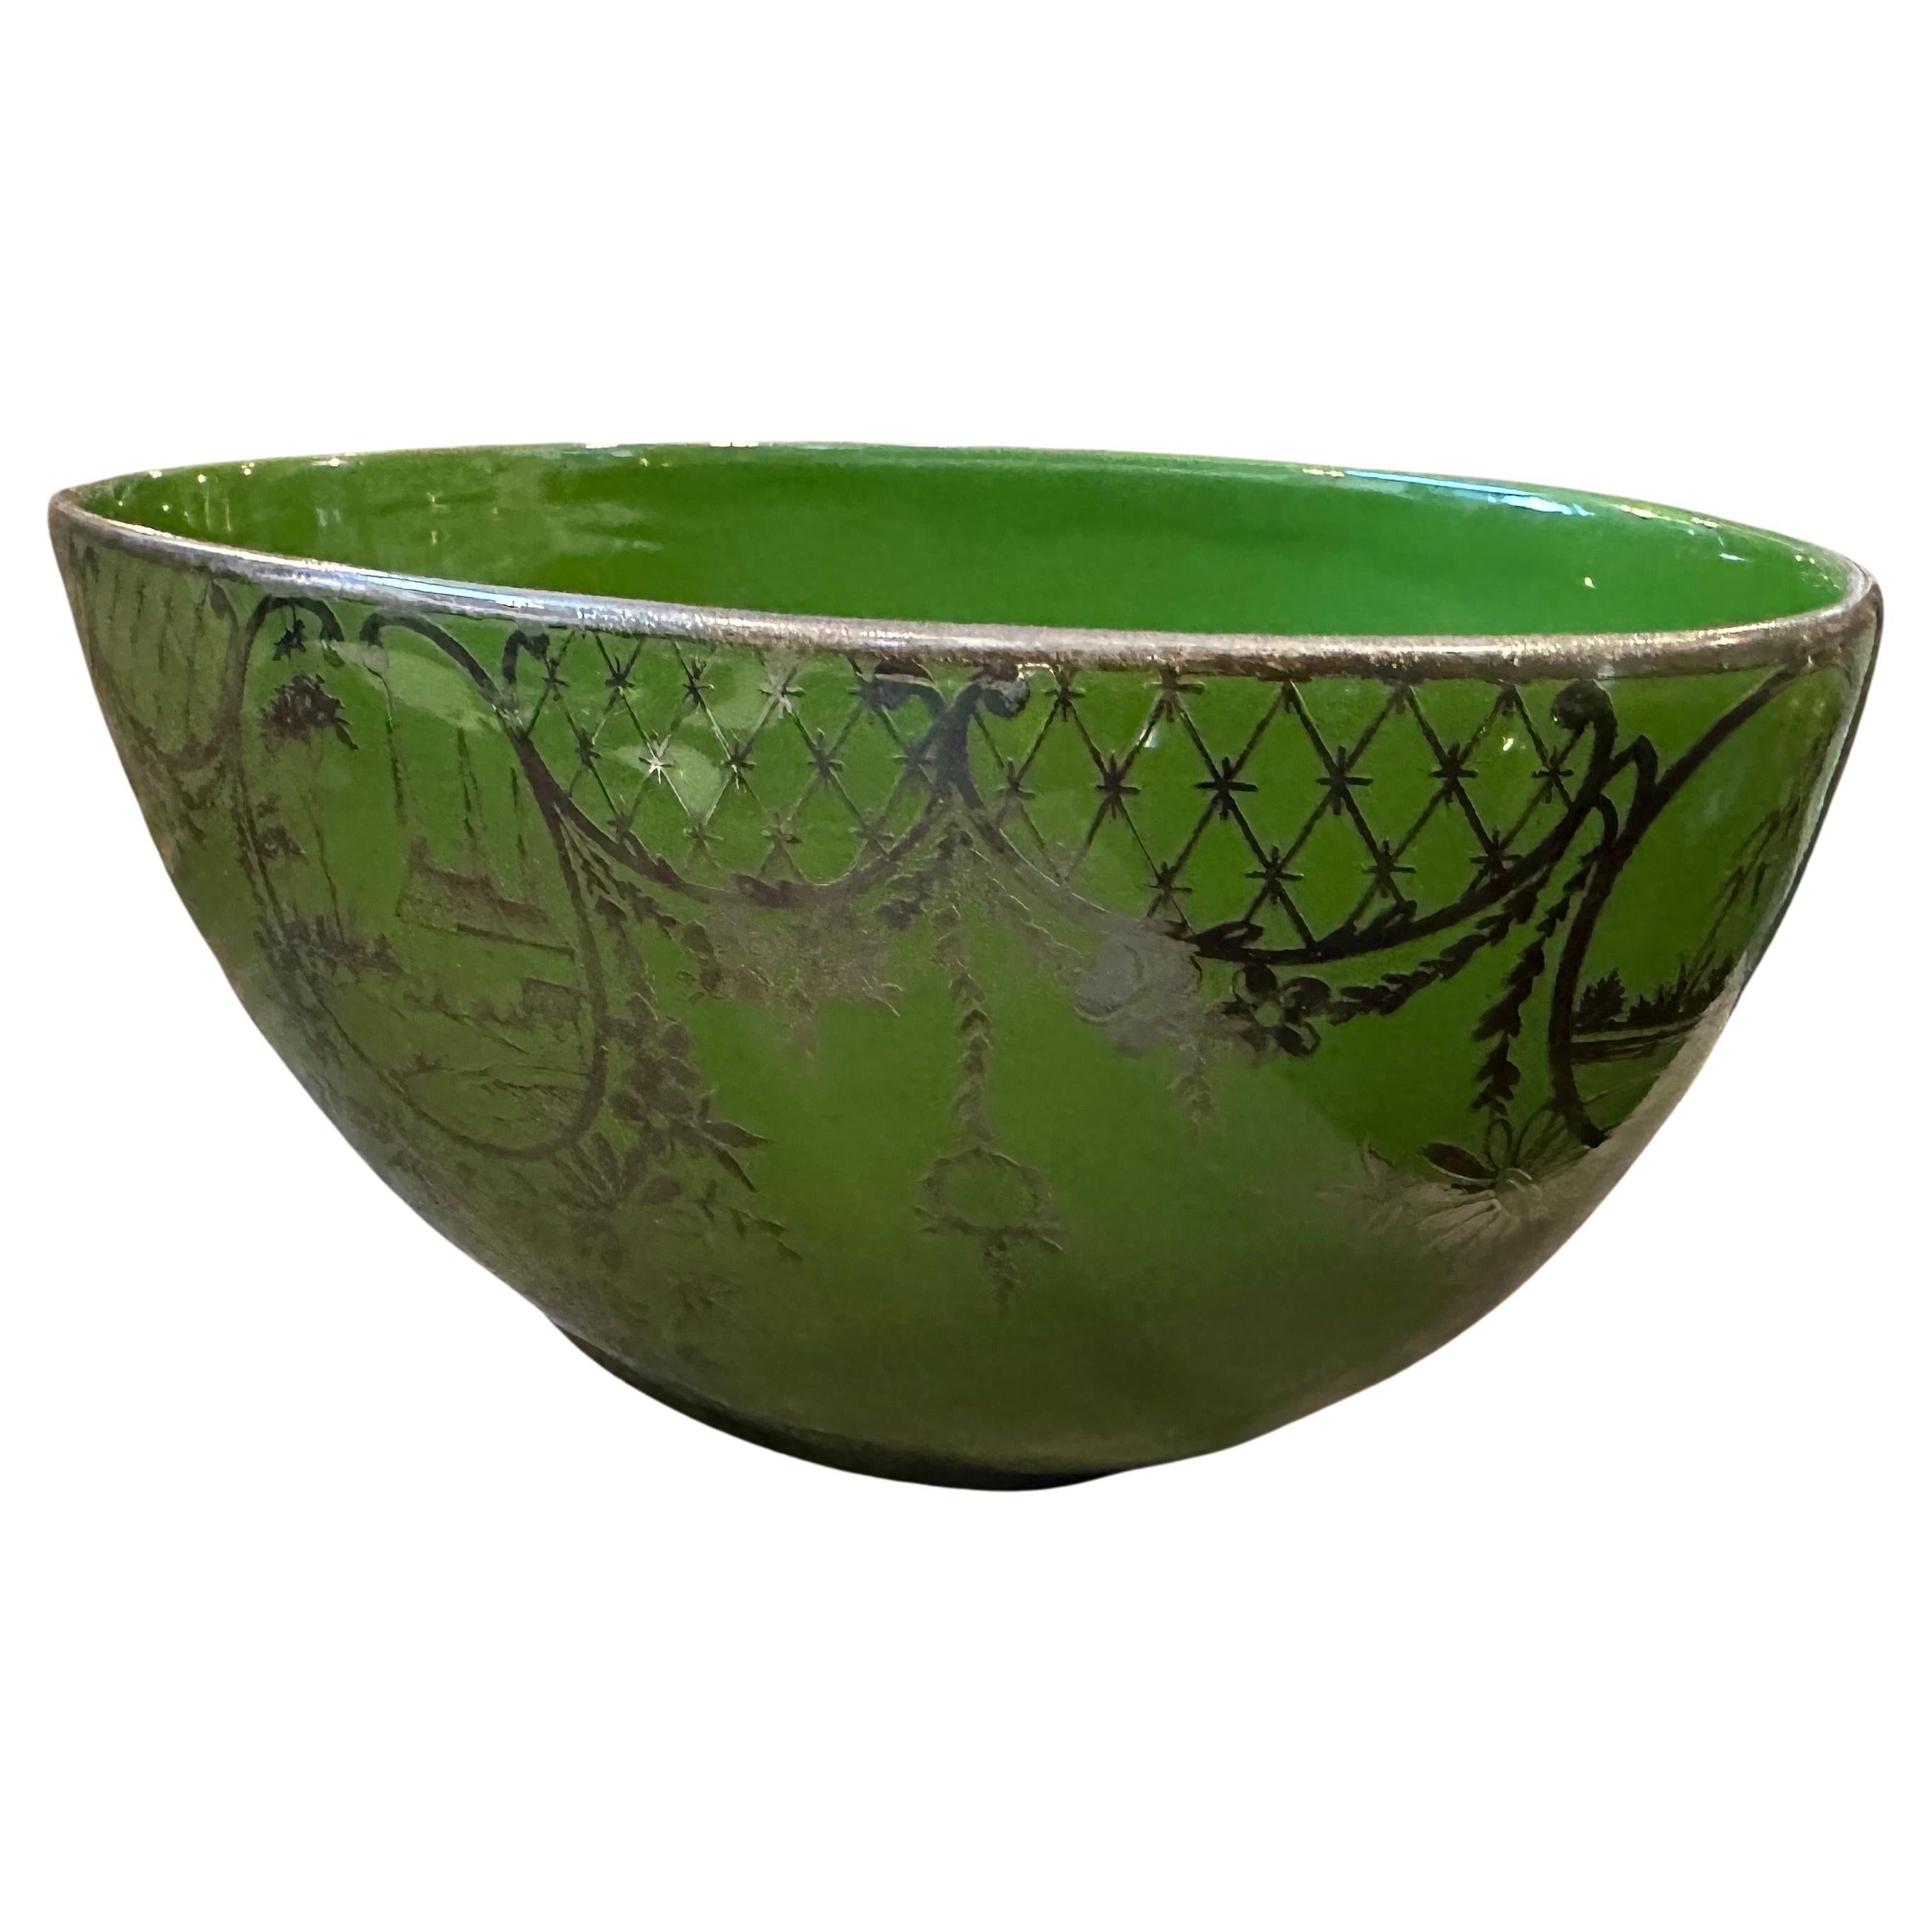 Centre de table Art déco en céramique verte et argent, fabriqué en Italie dans les années 40, en céramique de forme ovale dans une nuance de vert avec une finition émaillée et des décors en argent sterling. L'utilisation de la céramique verte et de